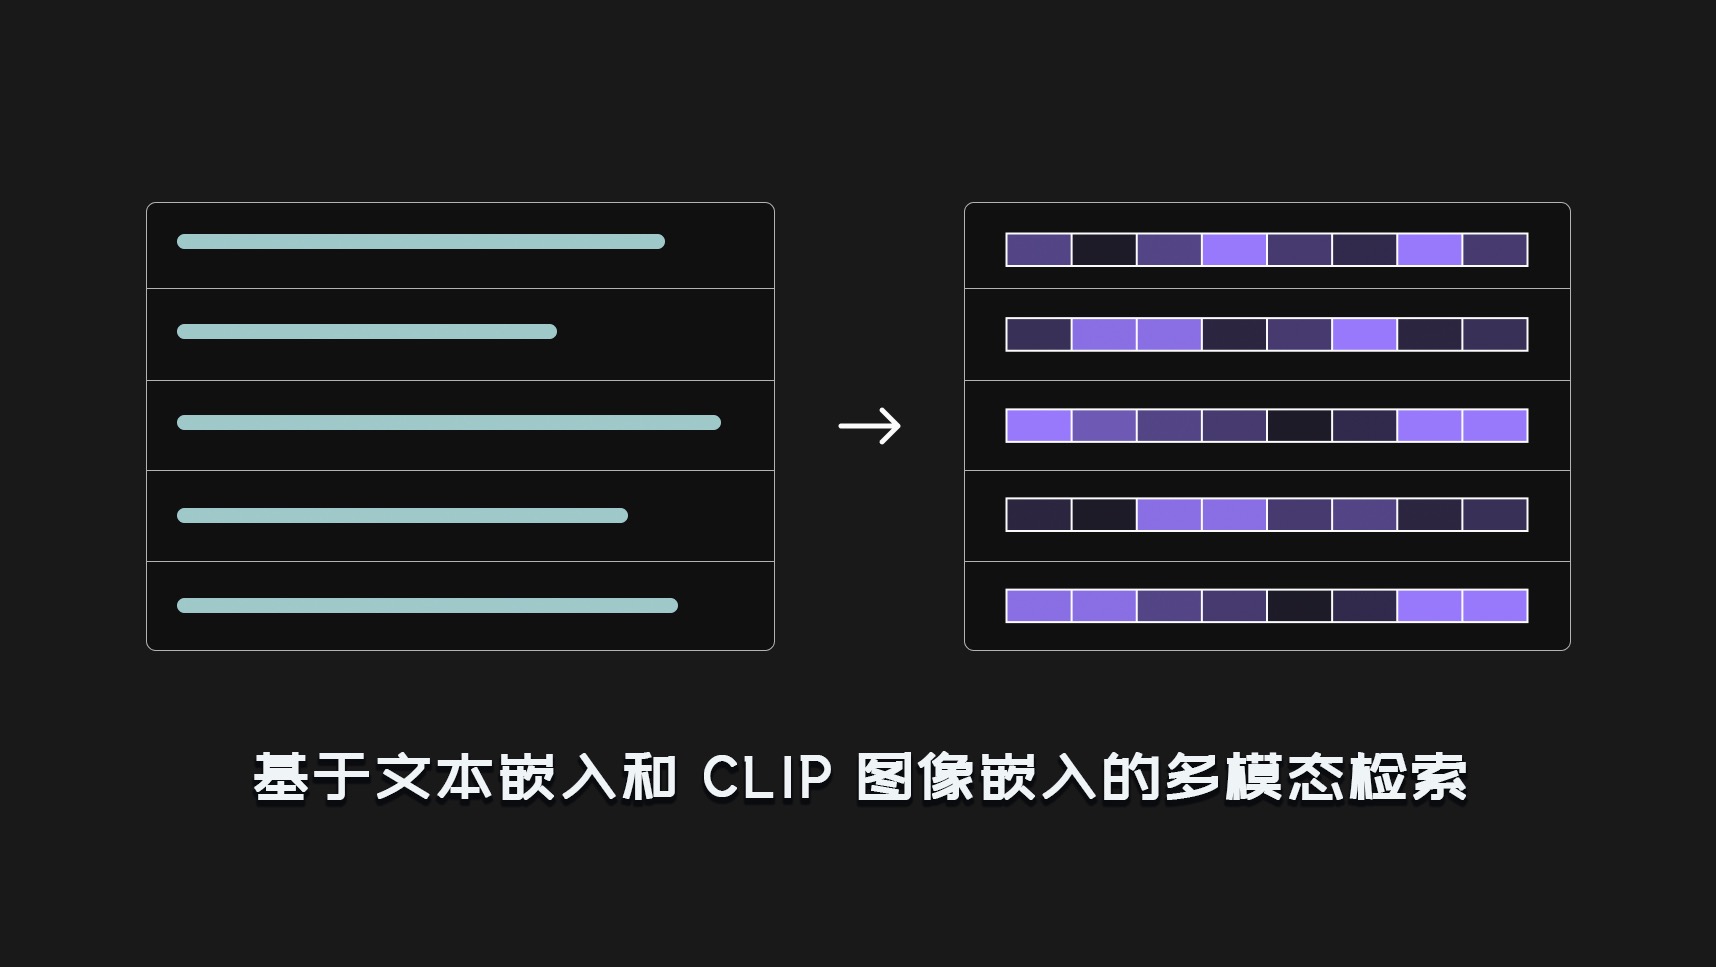 基于文本嵌入和 CLIP 图像嵌入的多模态检索